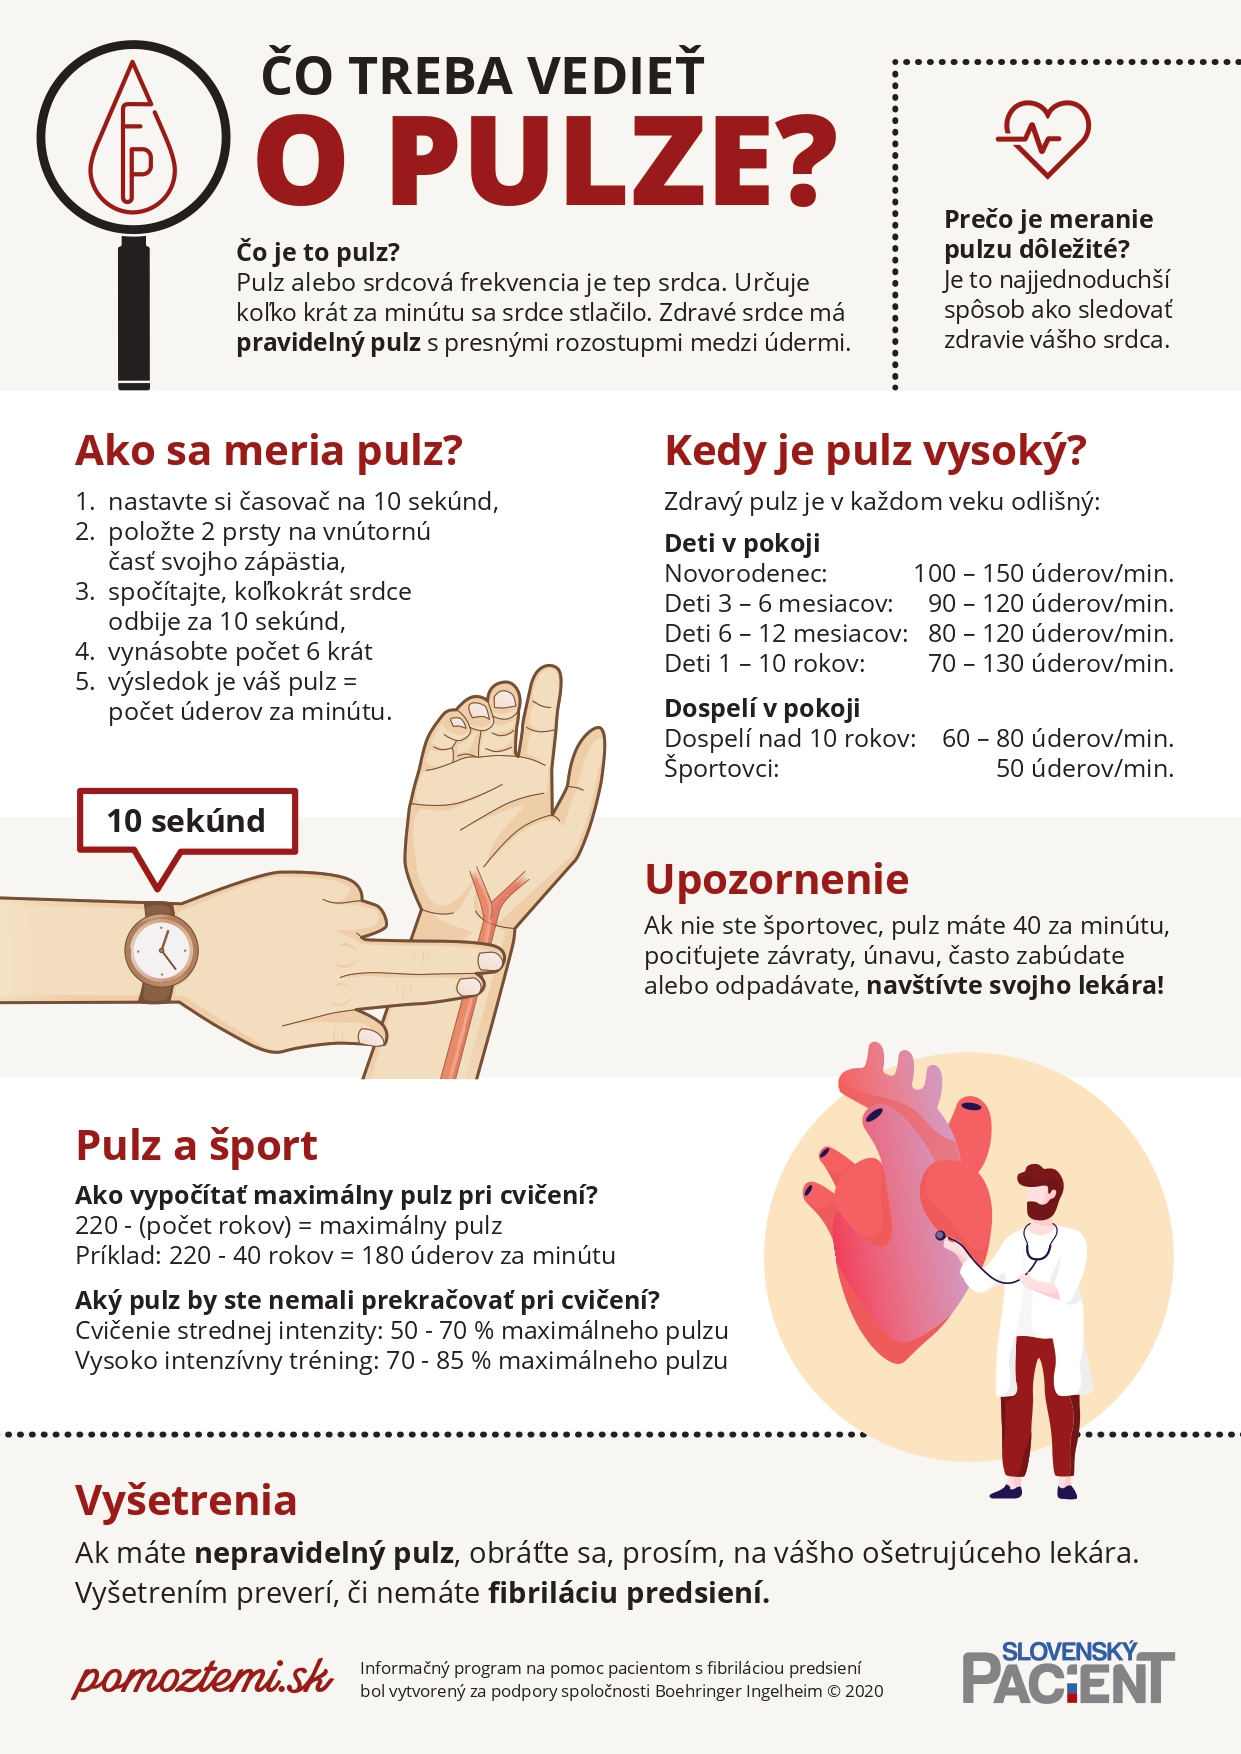 tlak krvi a pulz)